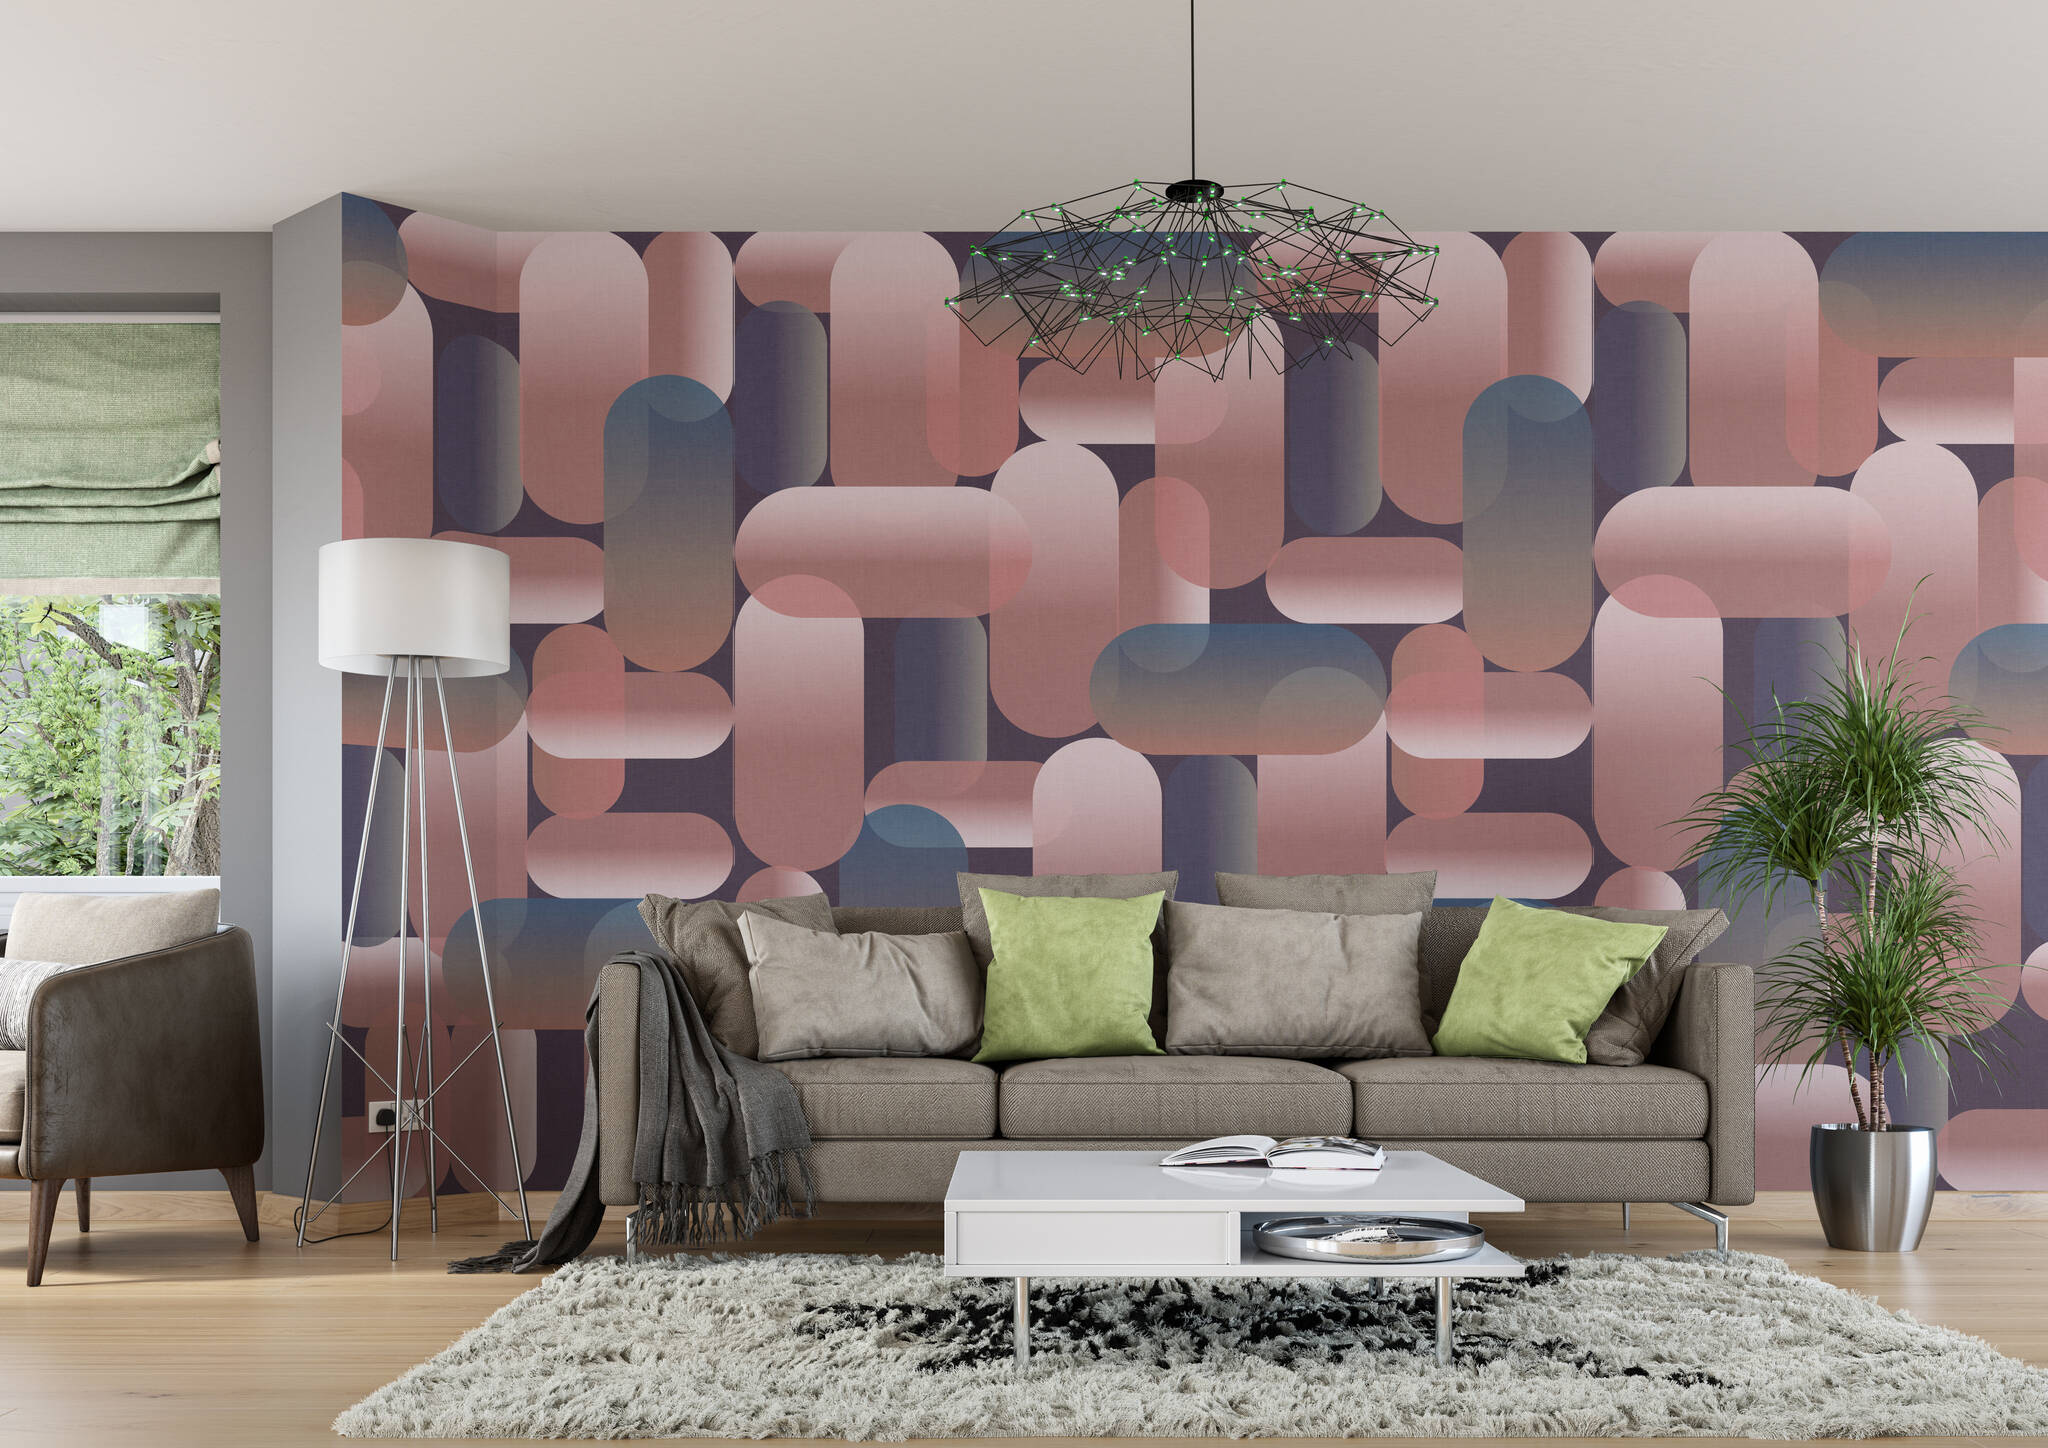 Wohnzimmer mit Wandbild - Anleihen aus den 70ern prägen dieses Oval-Muster in eleganten Rosa- und Blau-Tönen